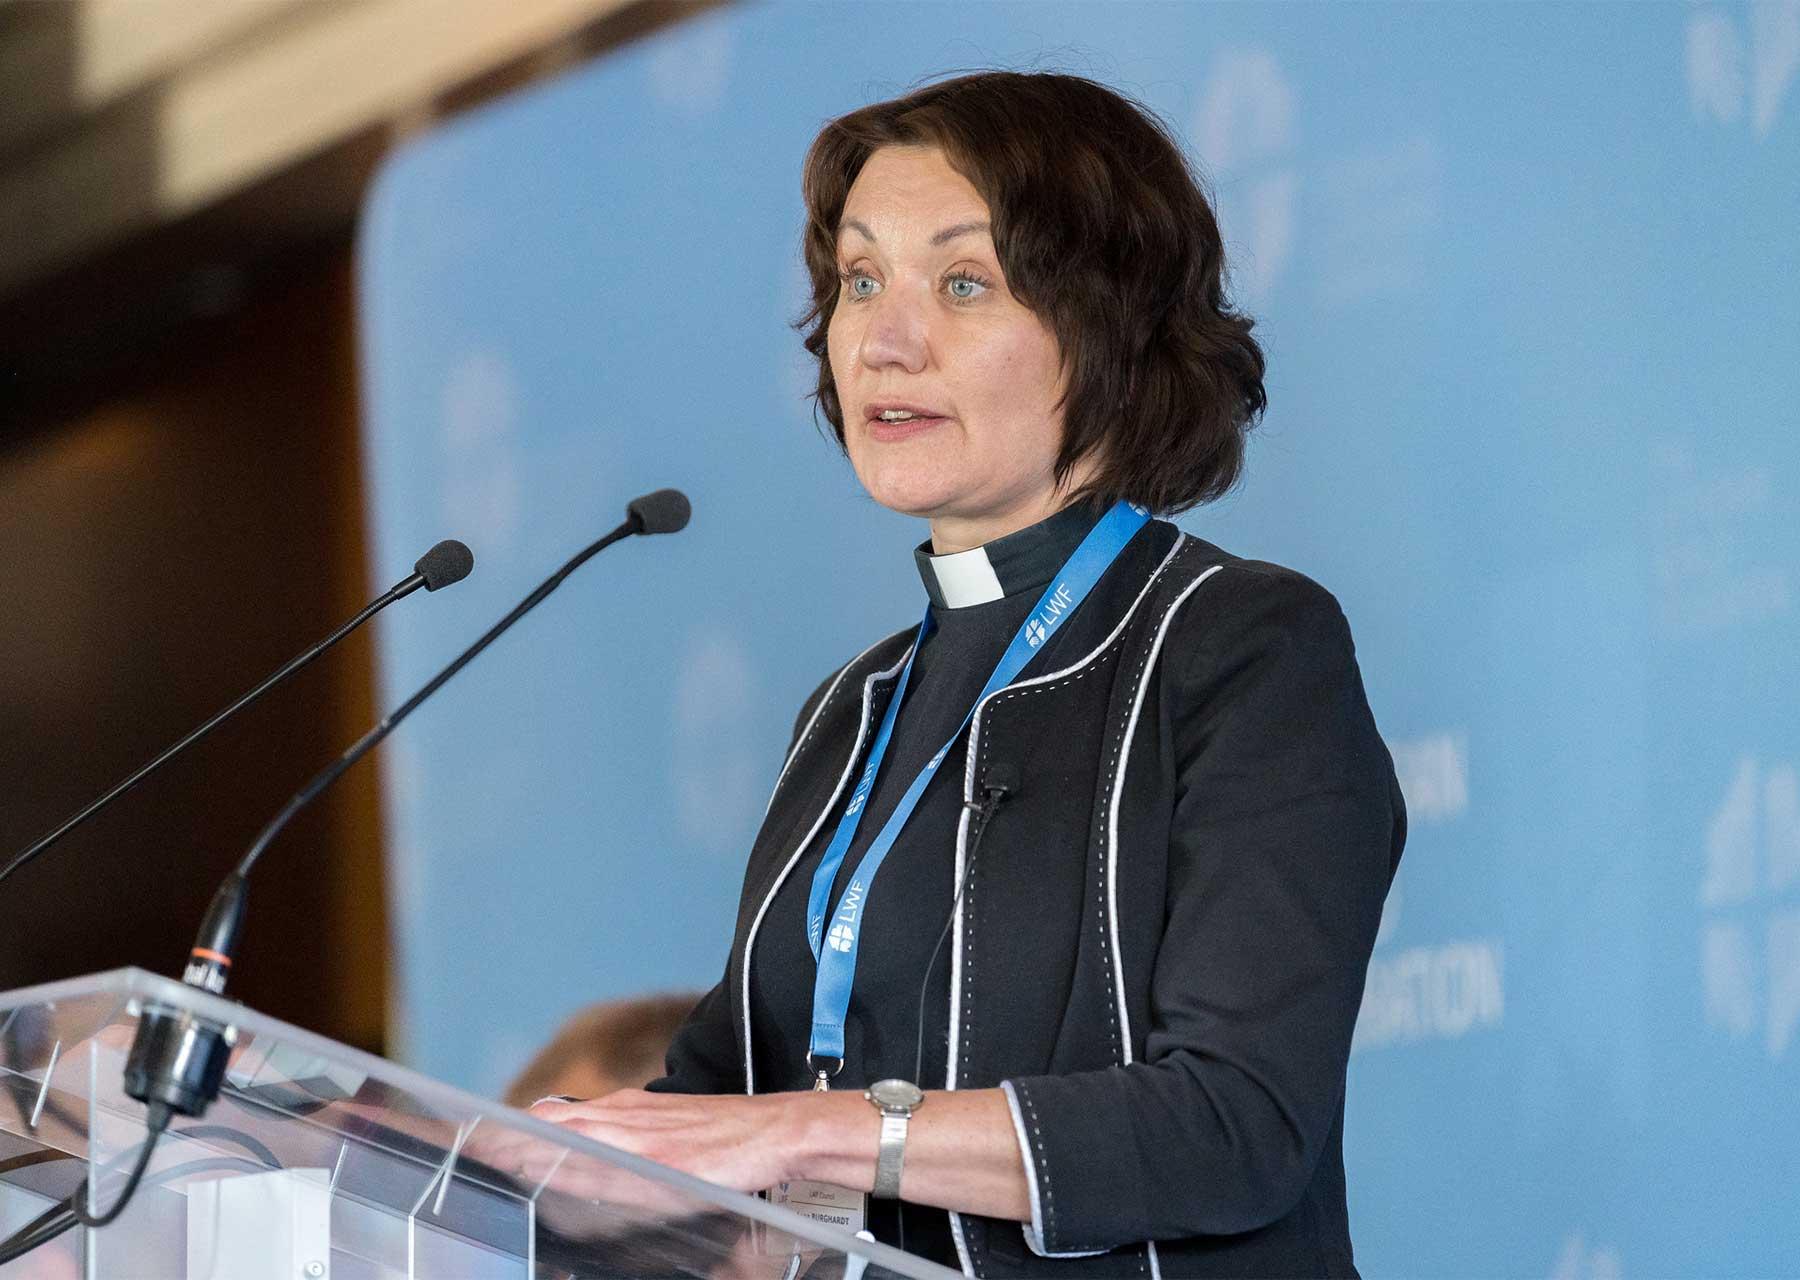 Rev. Dr Anne Burghardt, General Secretary of the LWF. Photo: LWF/Albin Hillert